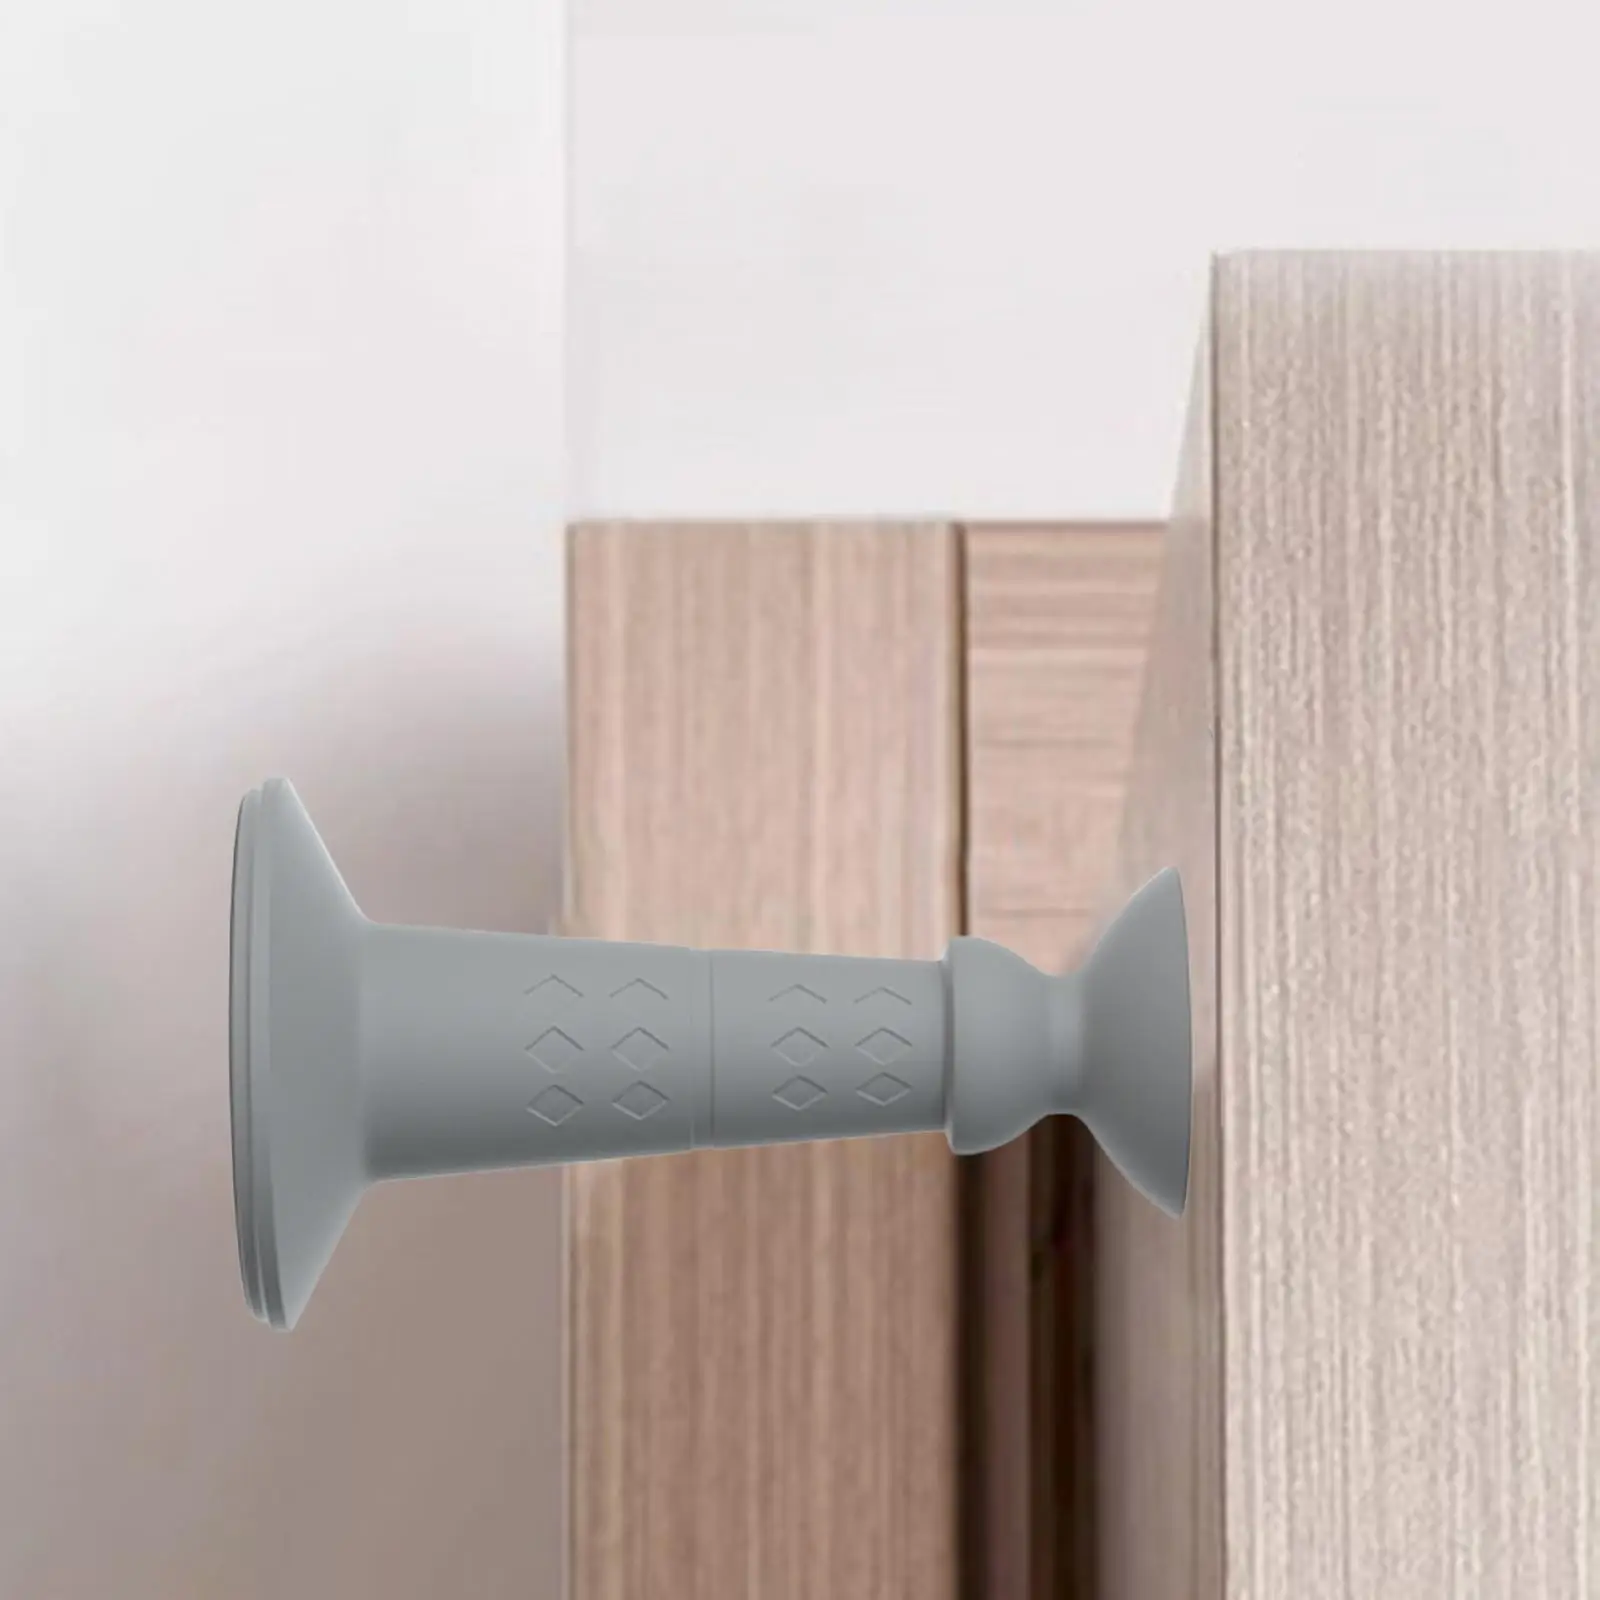 Doorstops Silicone Waterproof Wall or Floor Mount Premium Strong Lightweight Door Holder for Home Office Bedroom Bathroom